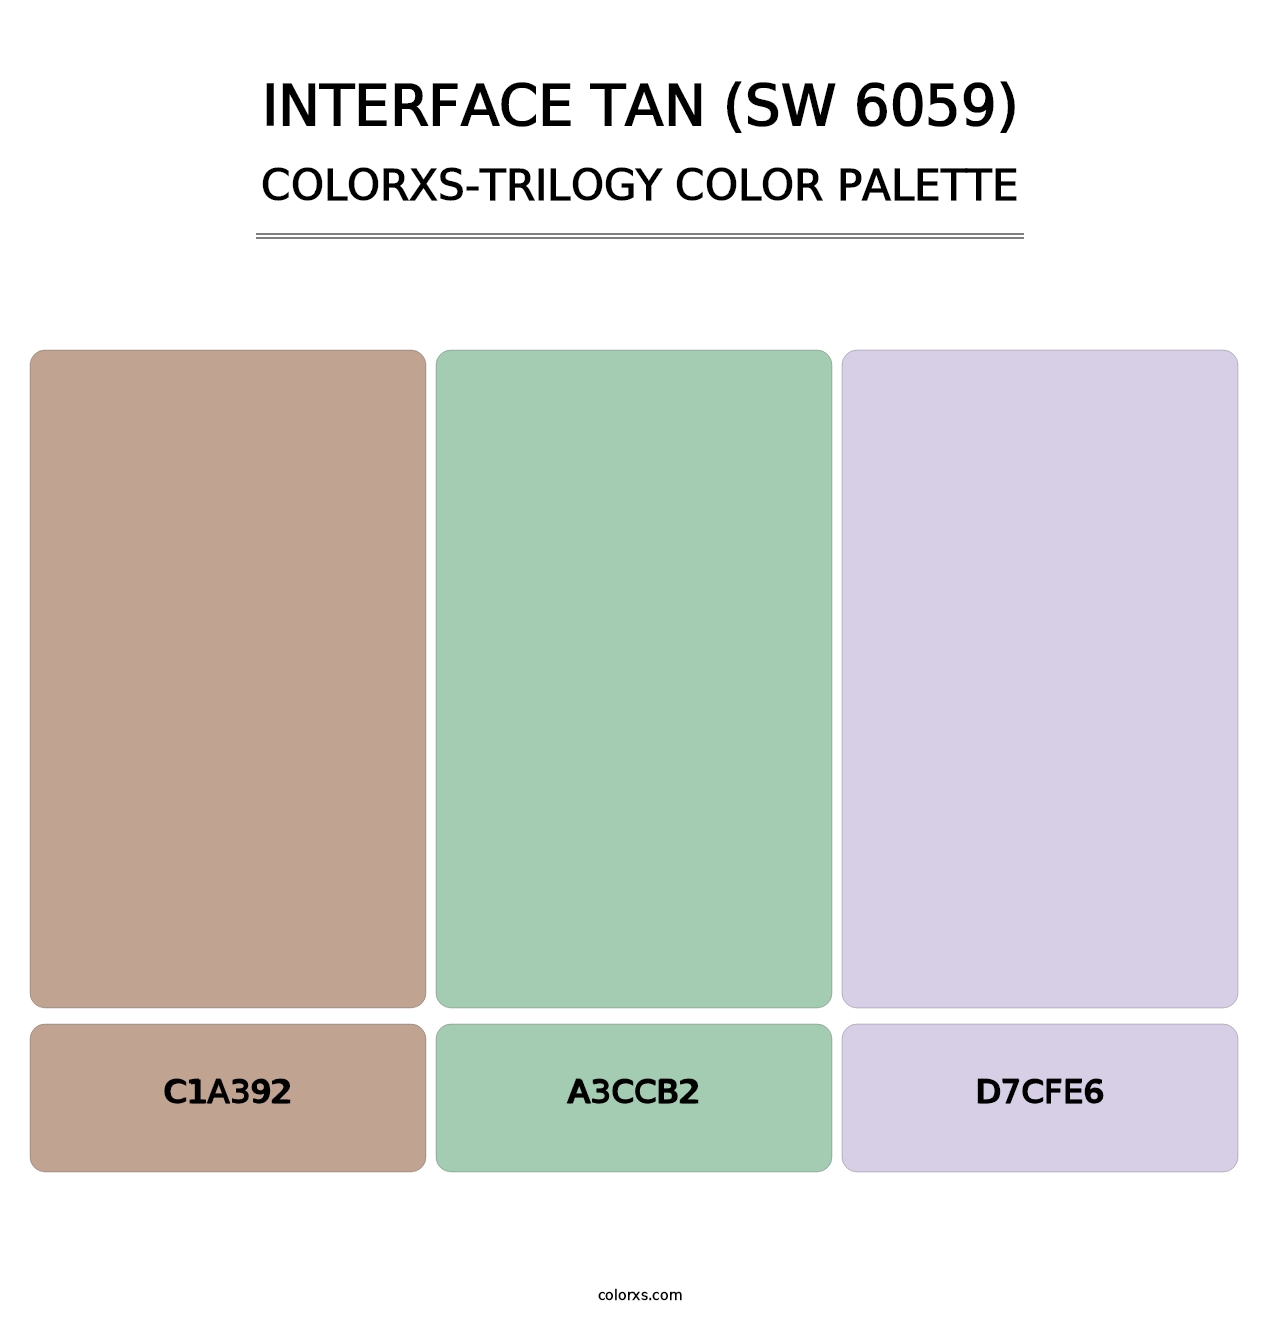 Interface Tan (SW 6059) - Colorxs Trilogy Palette